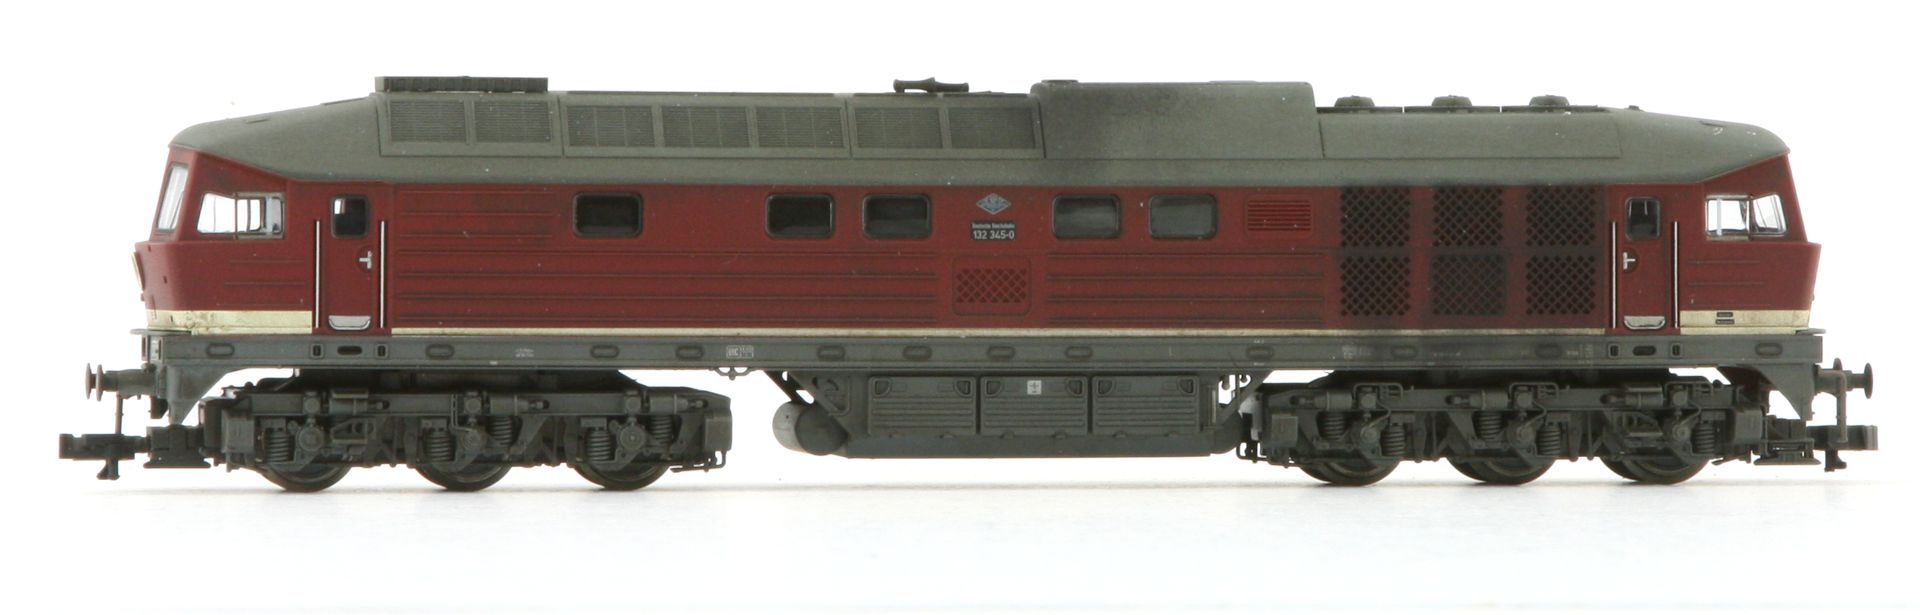 Saxonia 120045 - Diesellok 132 345-0, DR, Ep.IV, DC-Sound, gealtert